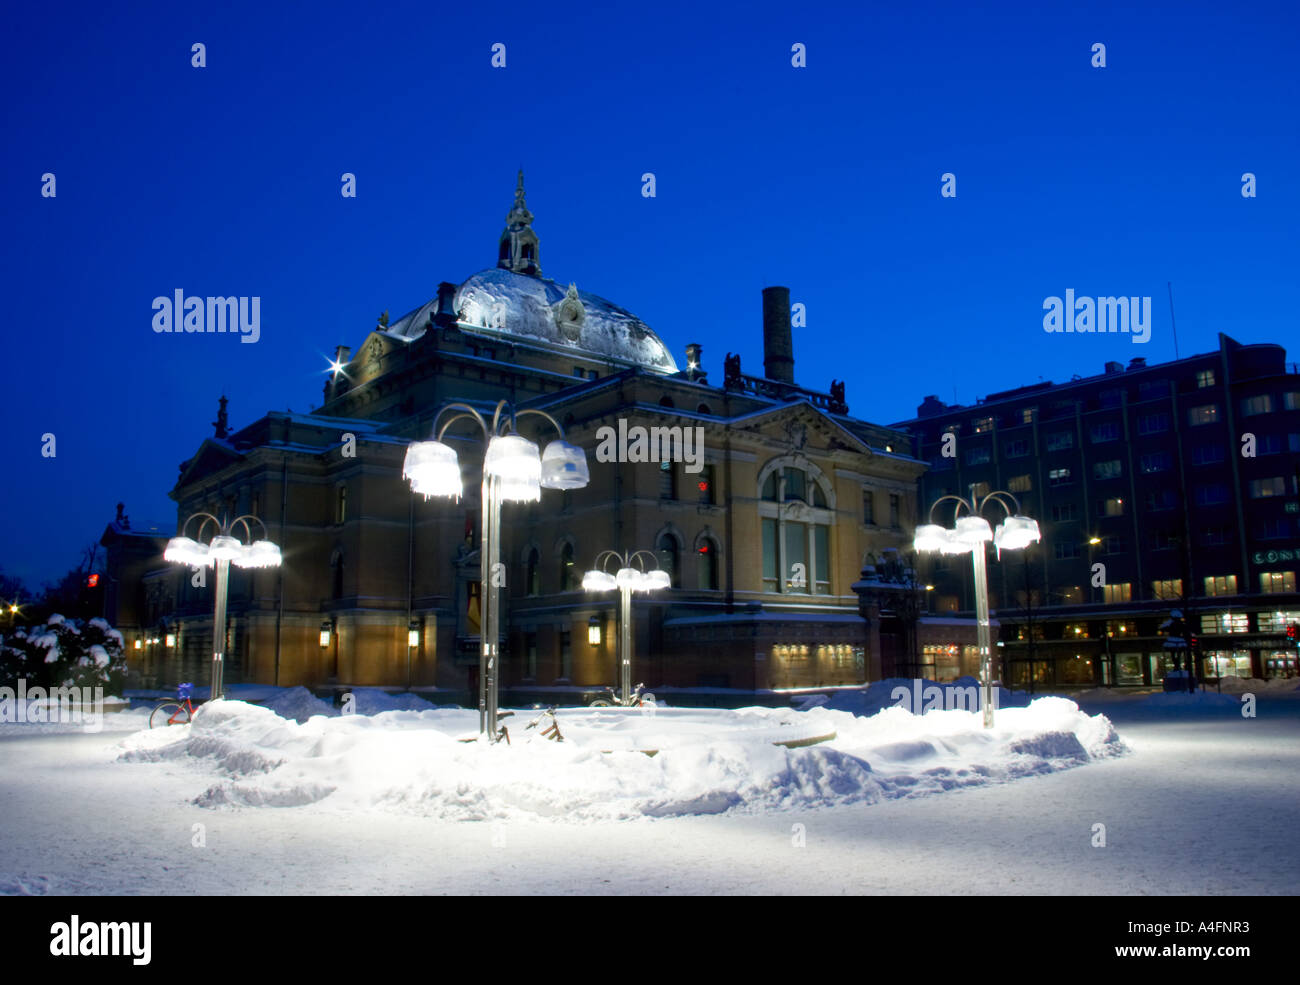 Norway, Oslo, Oslo City. A cityscape scene of the National Theatre in Oslo City / Oslo region. Stock Photo